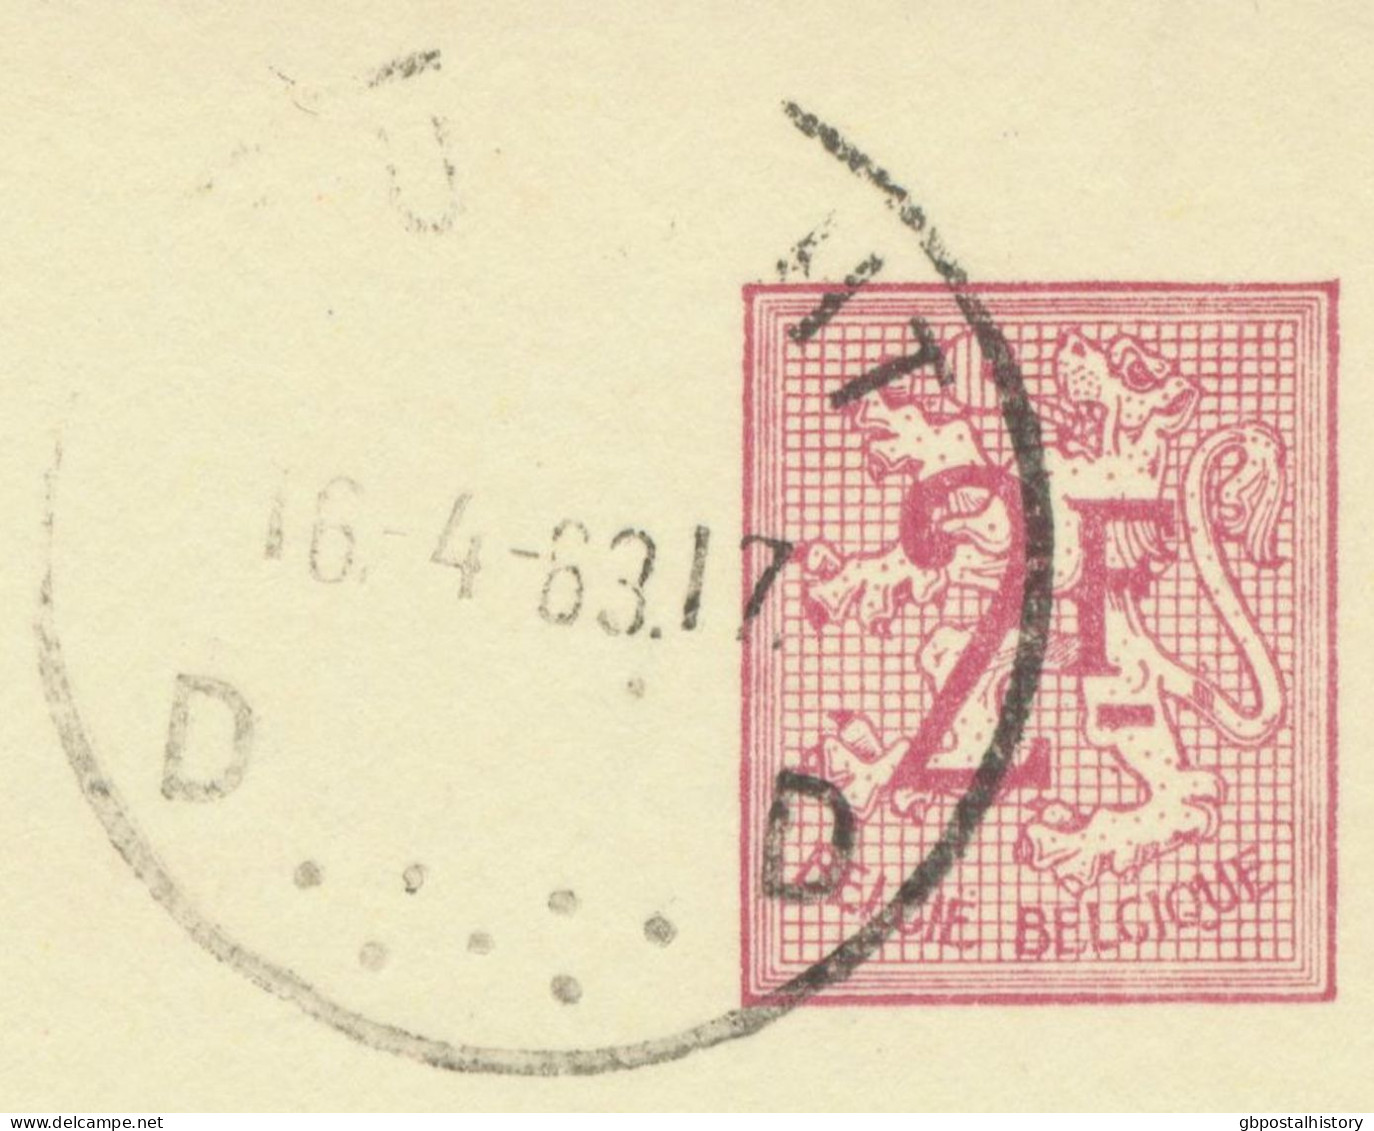 BELGIUM VILLAGE POSTMARKS  BURCHT D (now Zwijndrecht) SC With Dots 1963 (Postal Stationery 2 F, PUBLIBEL 1904) - Oblitérations à Points